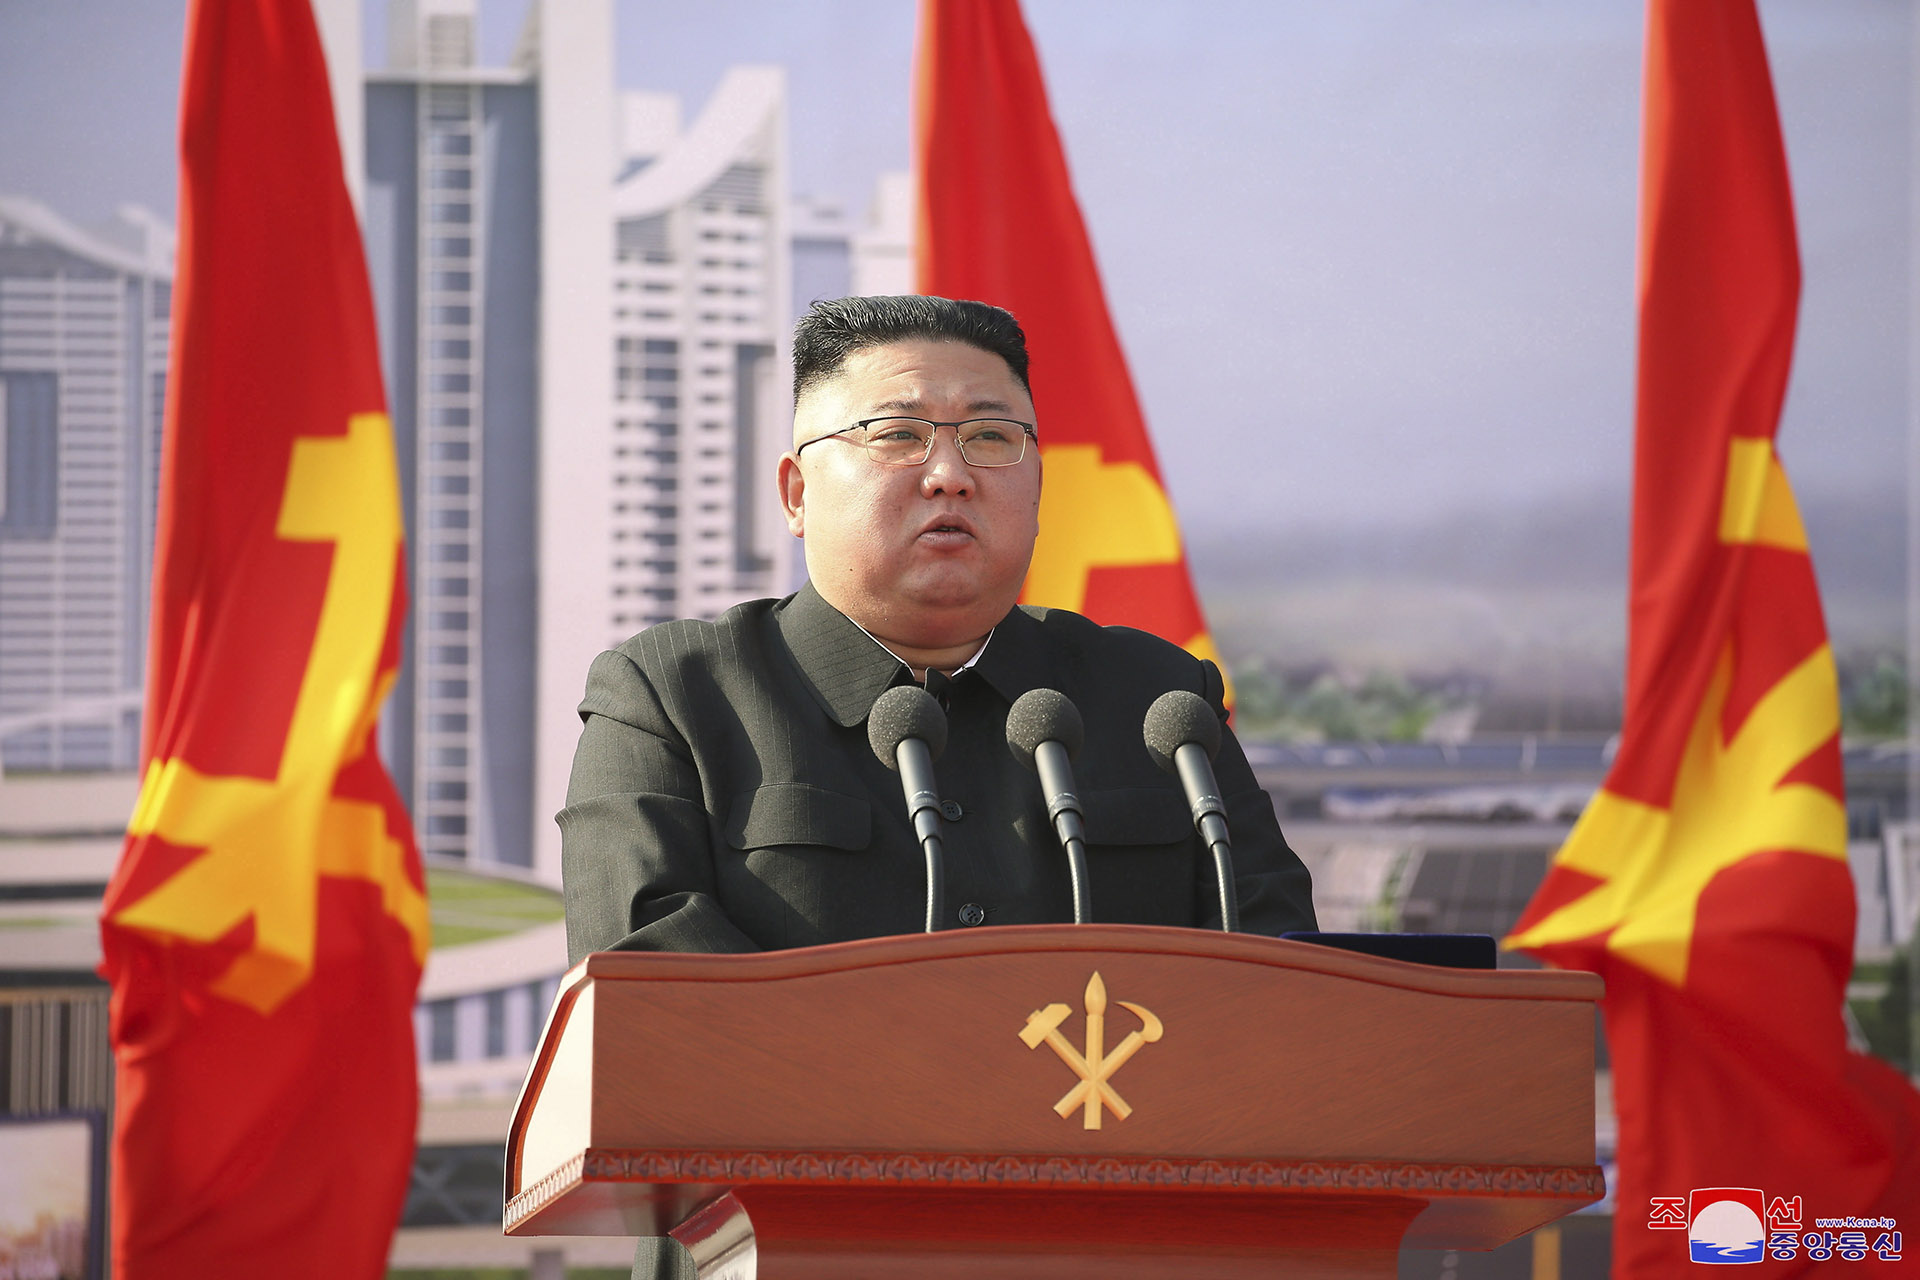 Észak-Korea közölte a WHO-val, hogy még mindig nem talált fertőzöttet